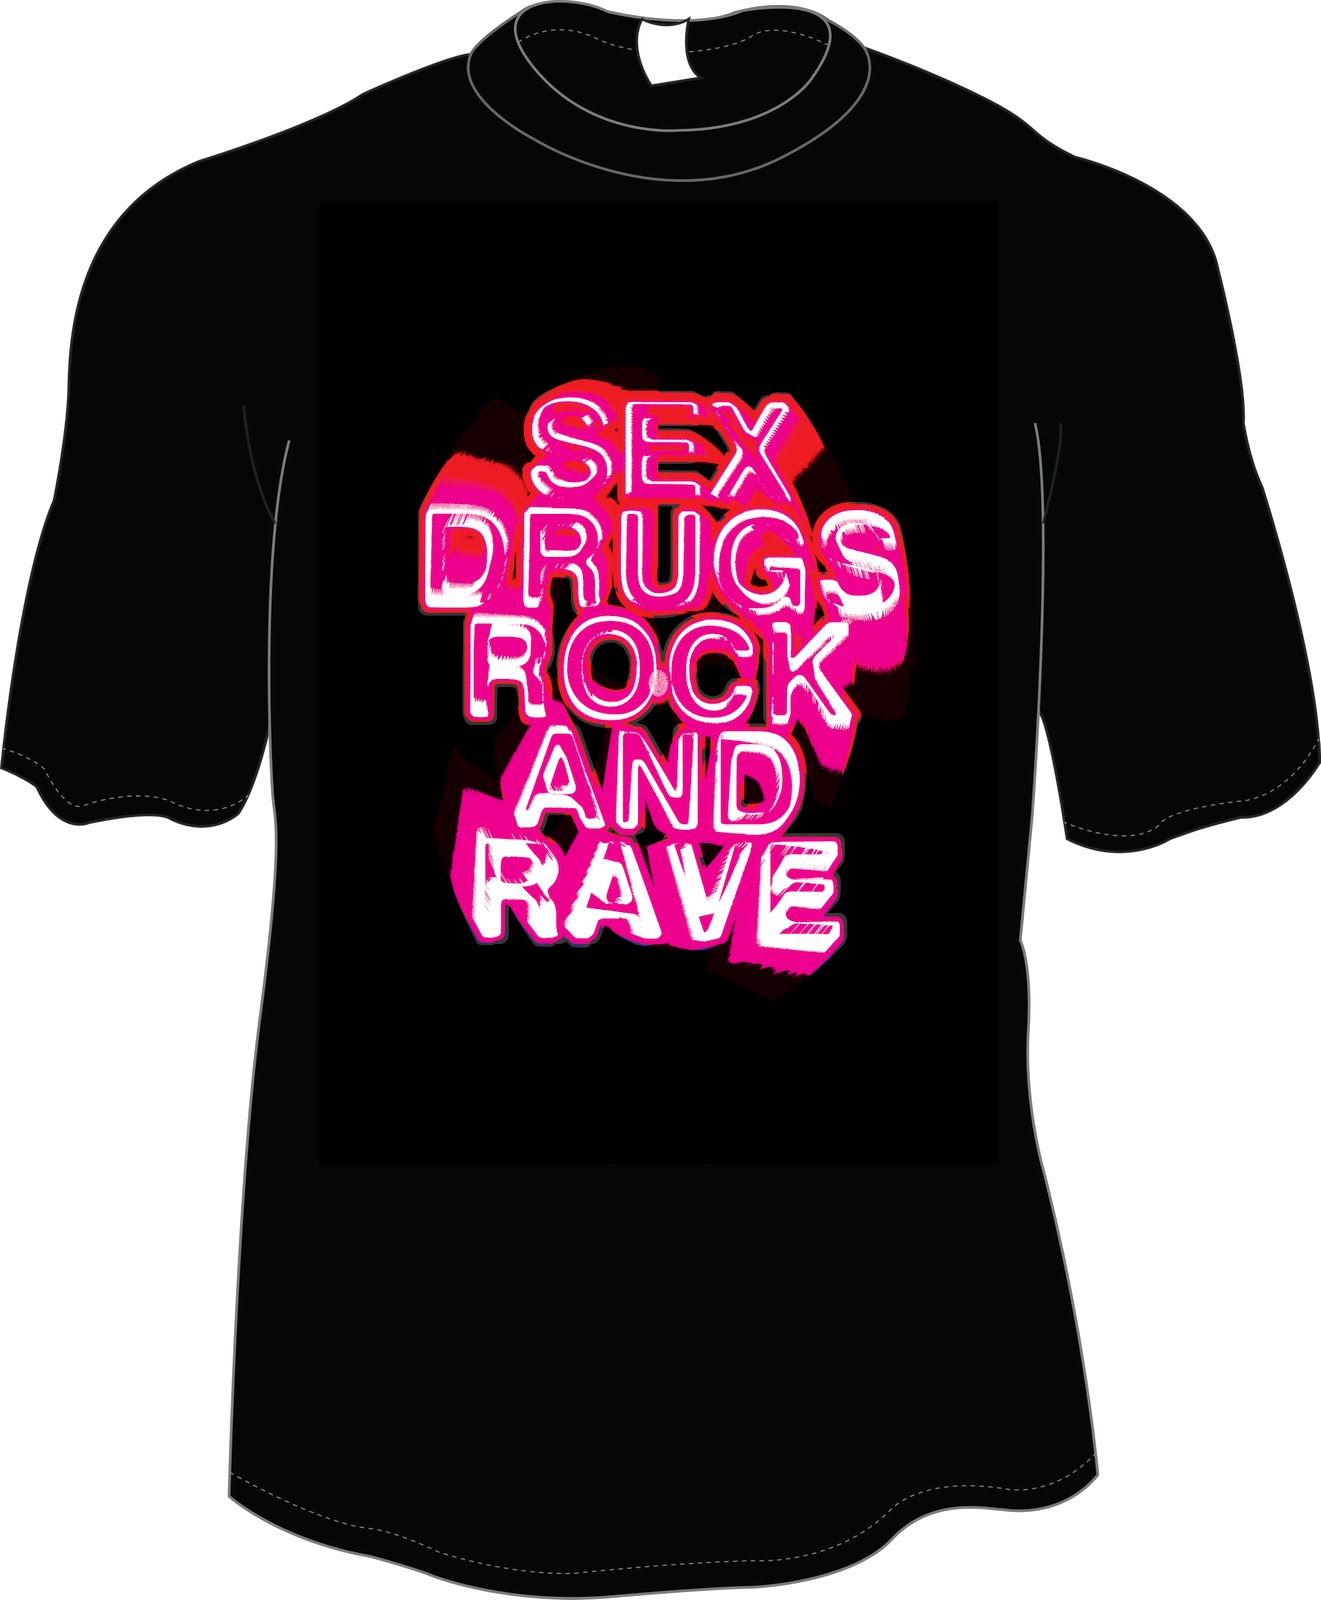 Sam Mallows Design Rave T Shirts